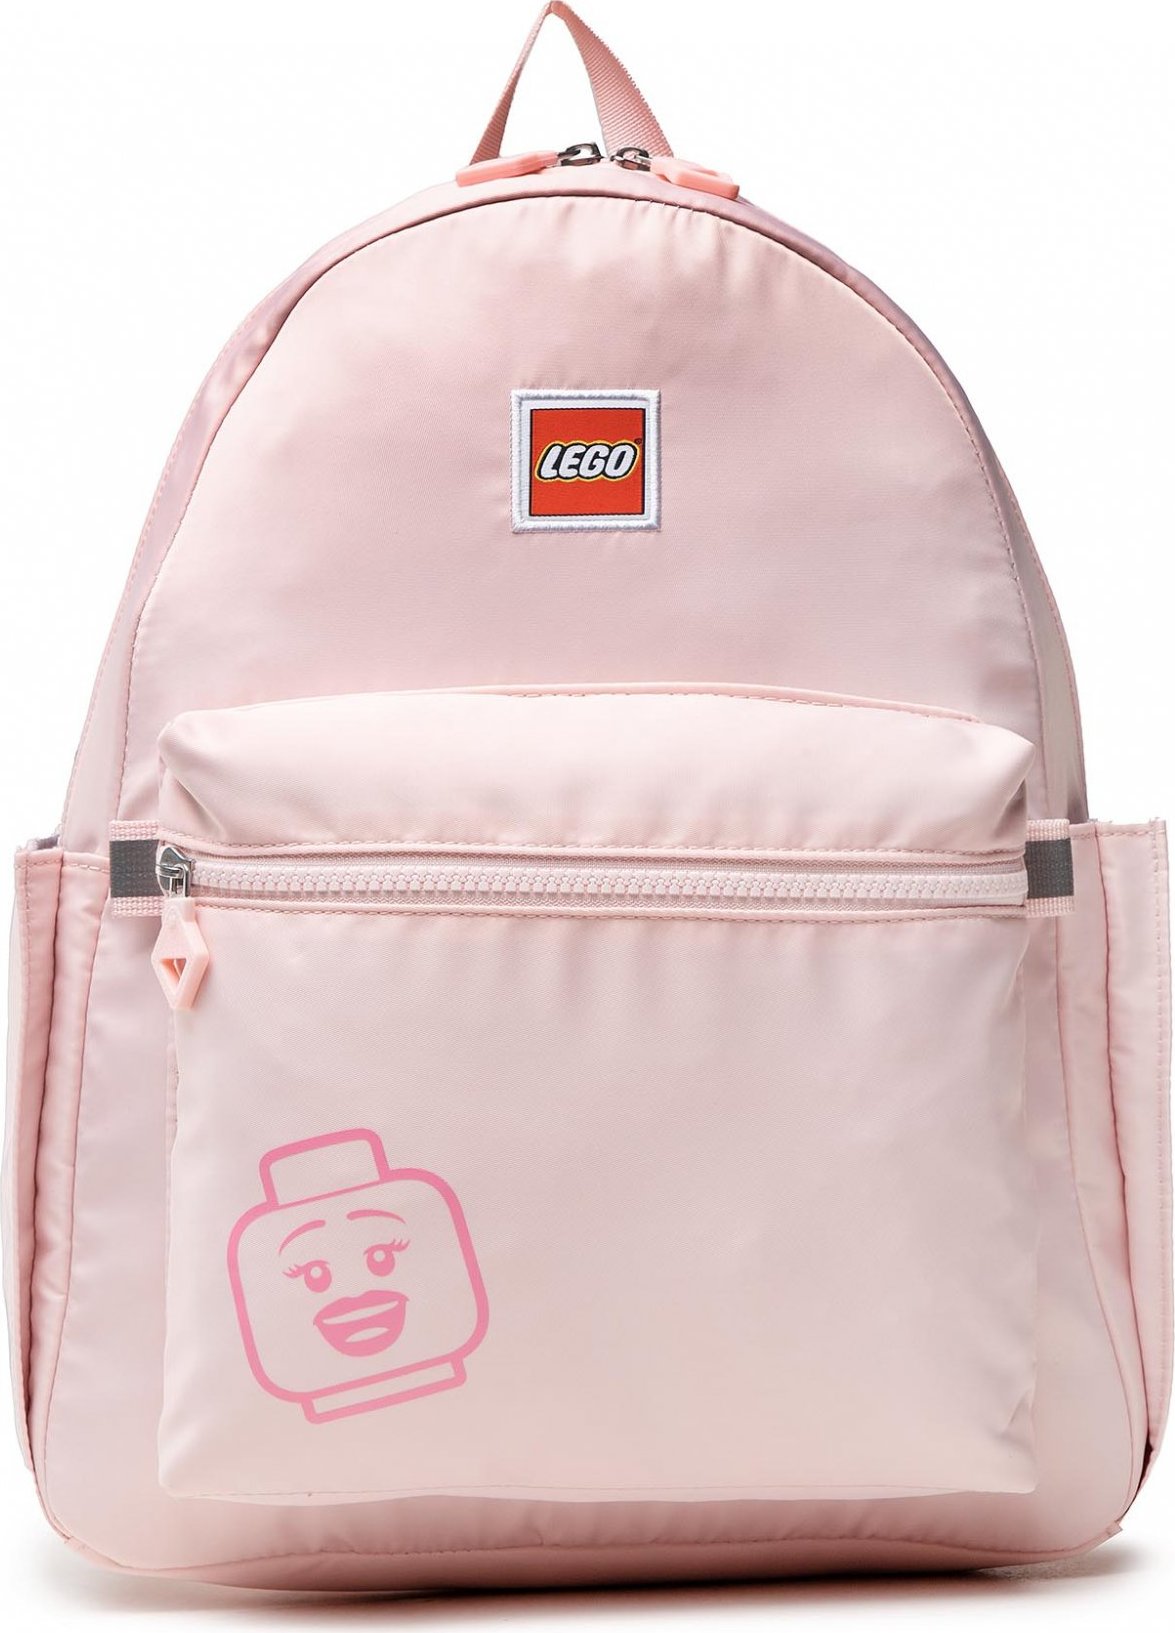 LEGO Tribini Joy Backpack Large 20130-1935